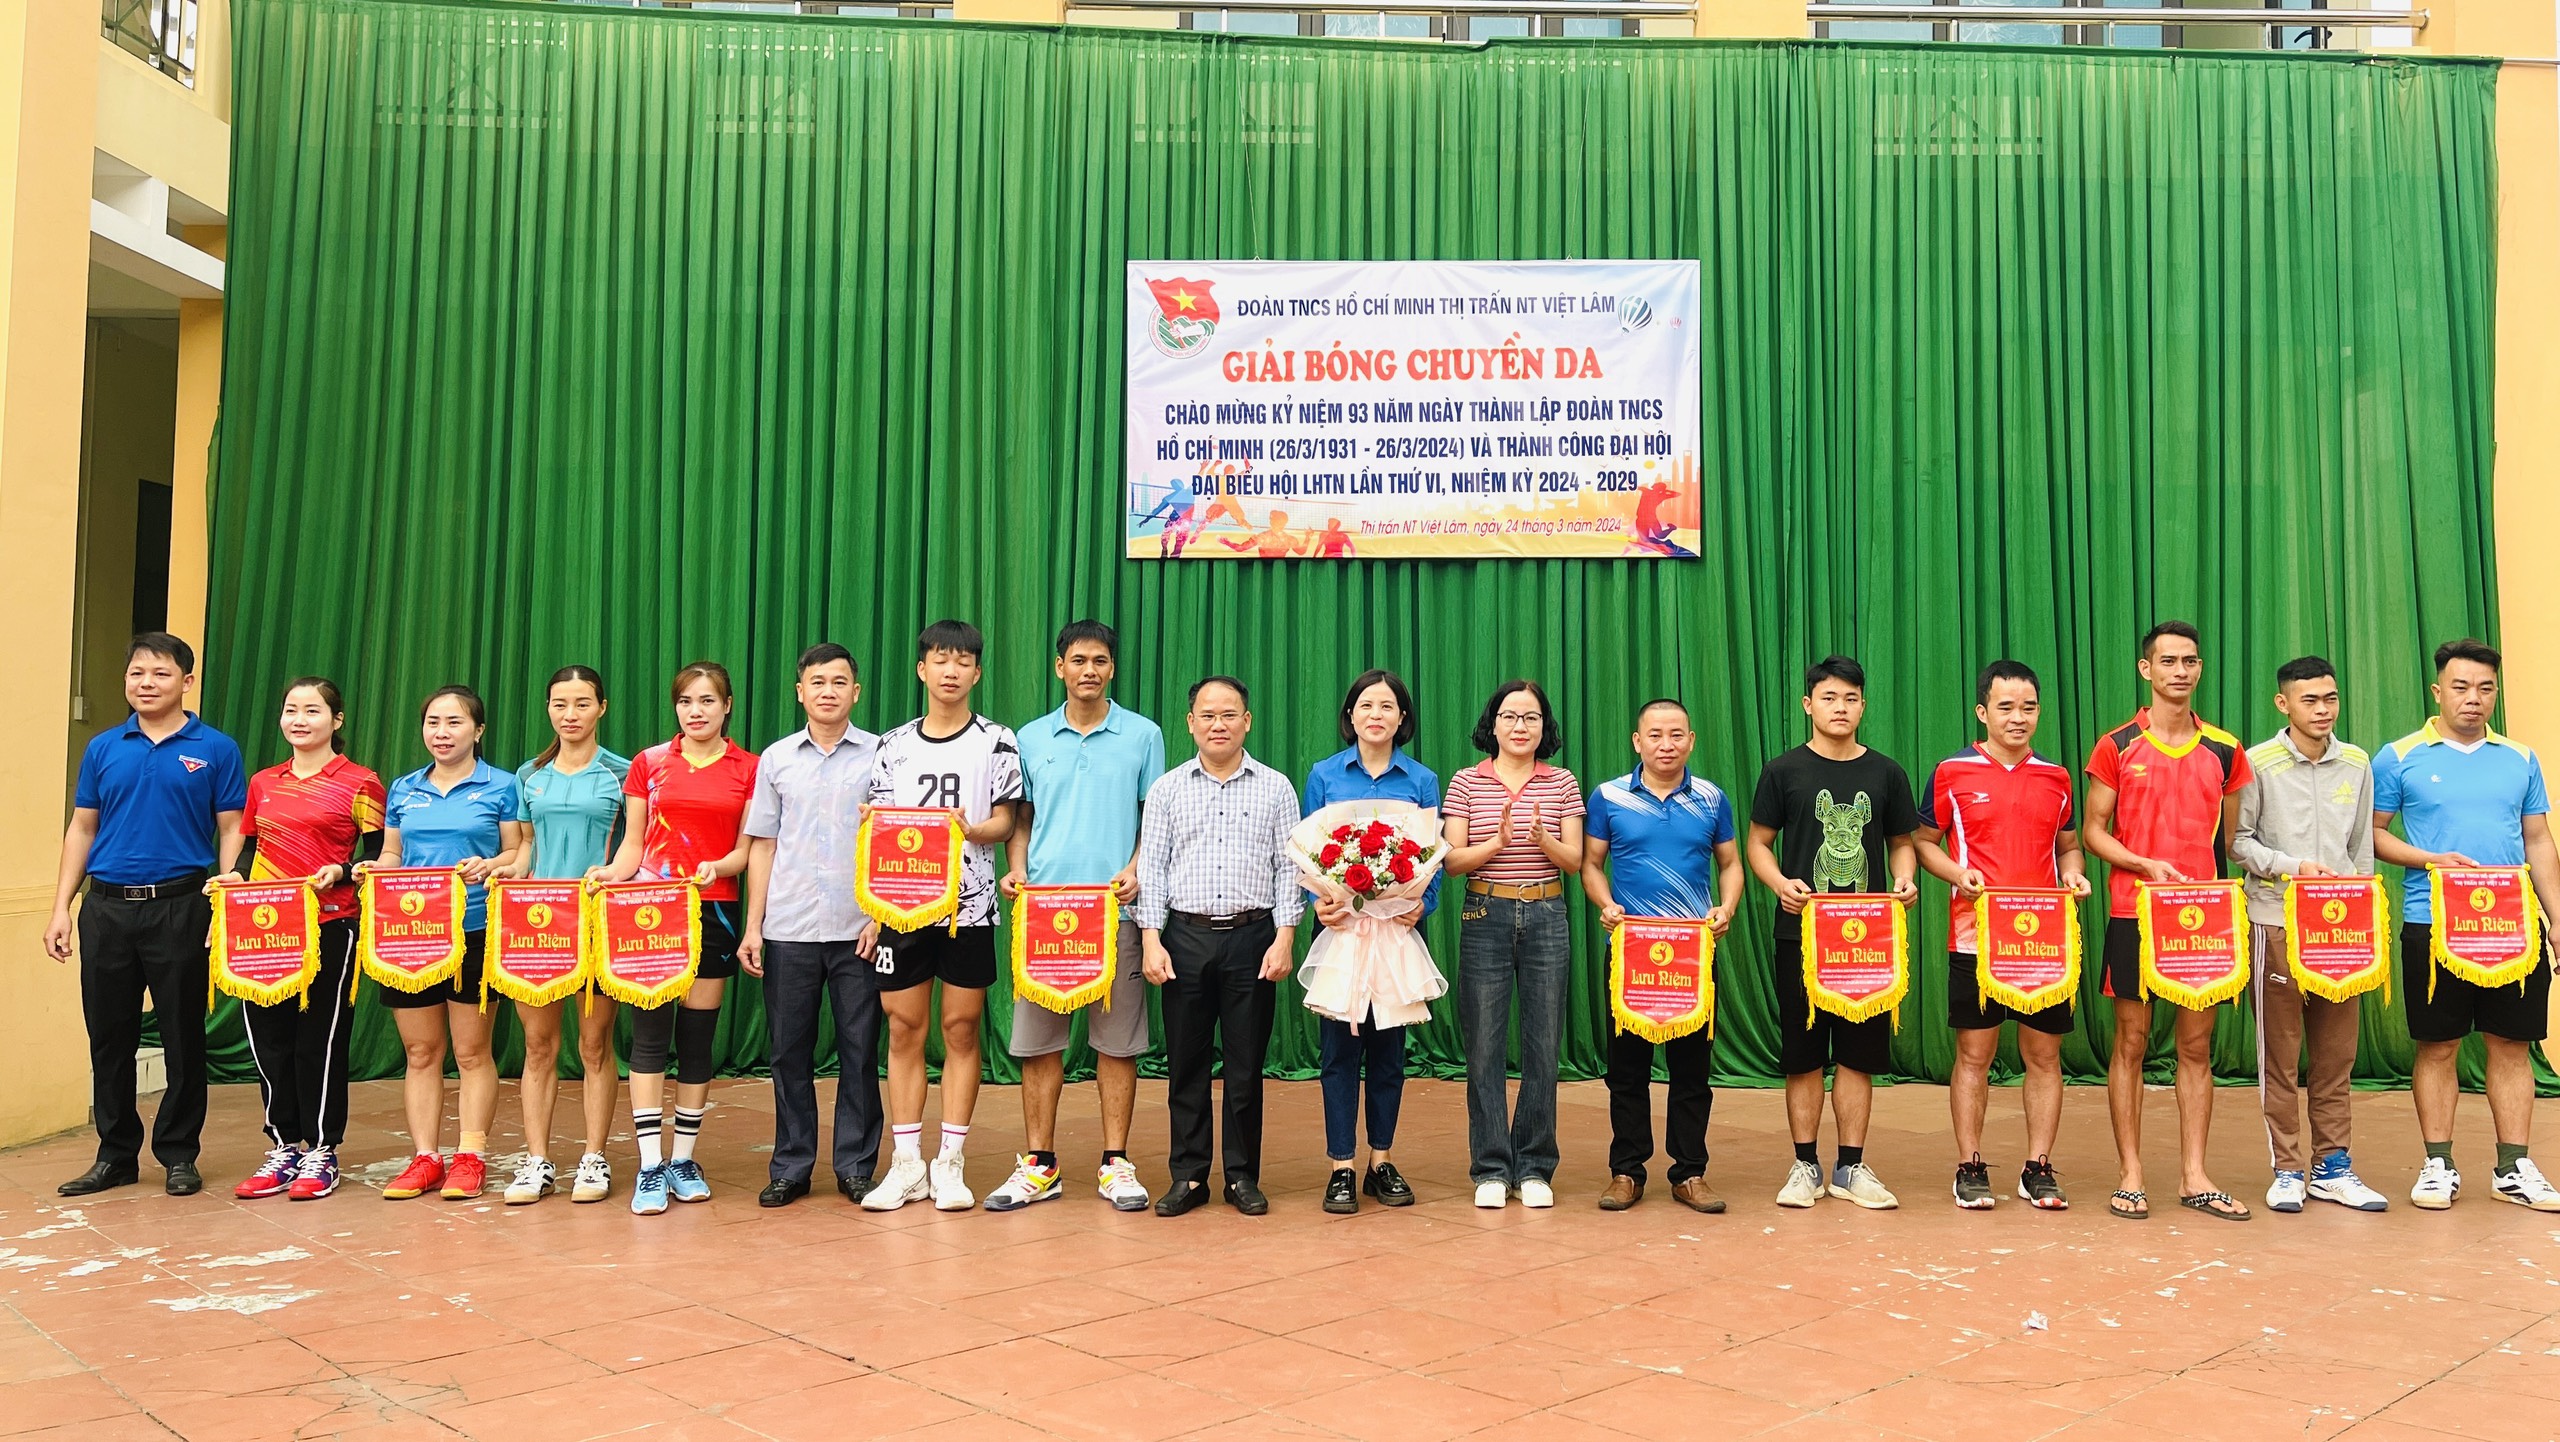 Giải bóng chuyền da Đoàn thanh niên thị trấn Việt Lâm